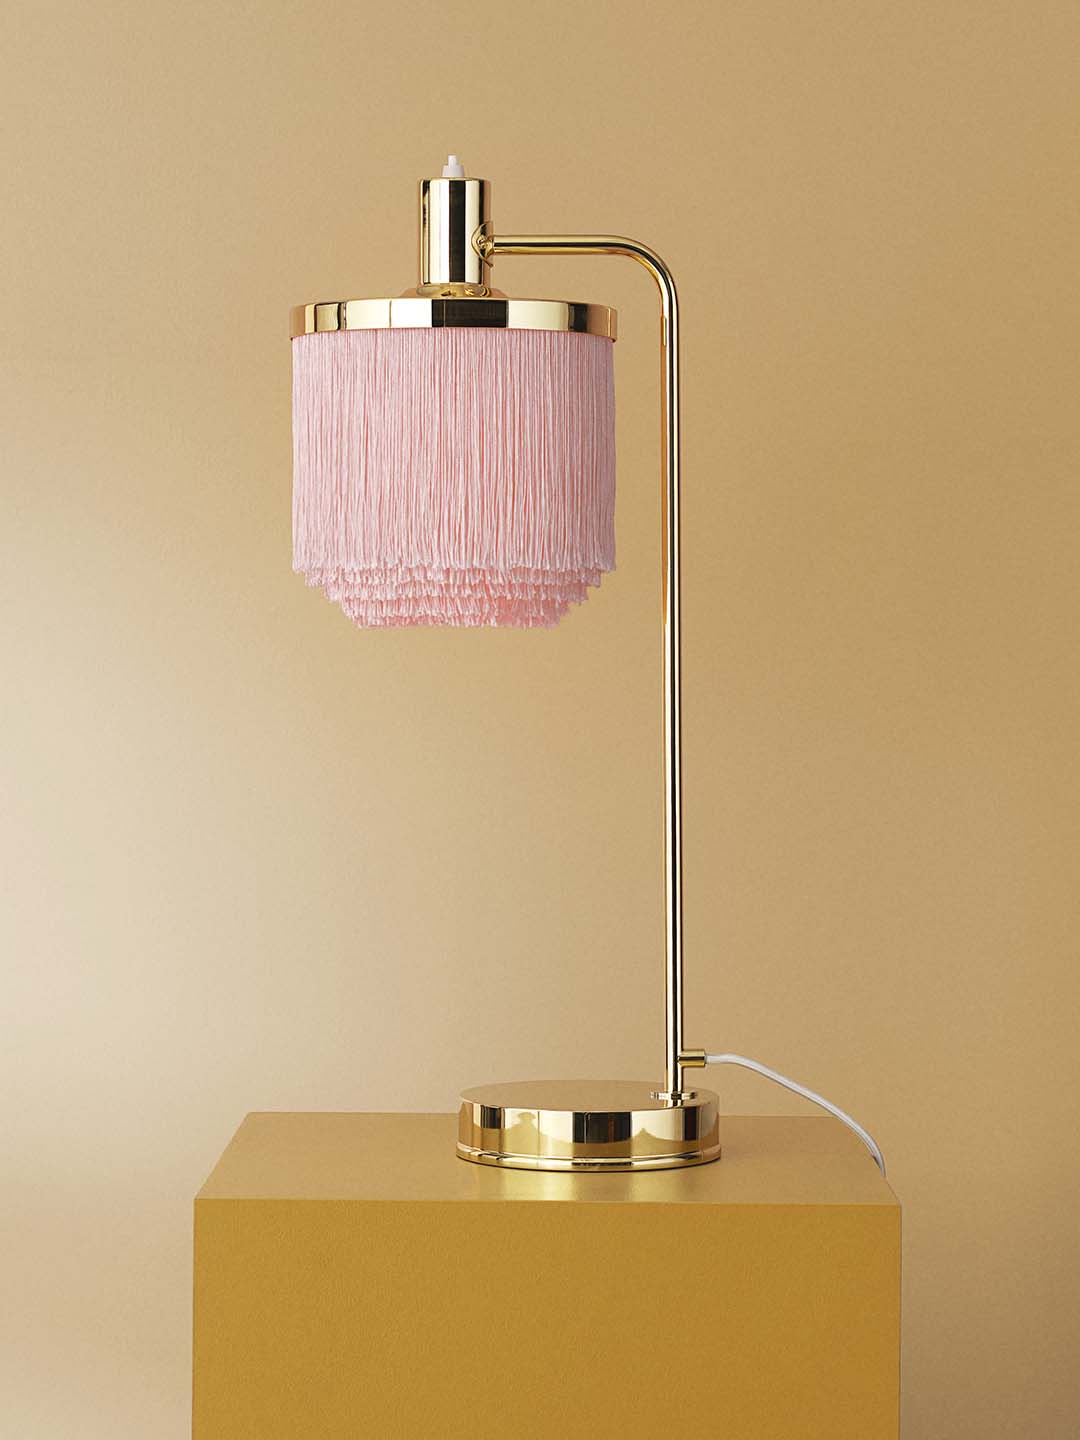 Светильник настольный Warm Nordic Fringe бледно-розового цвета на светло-желтом фоне